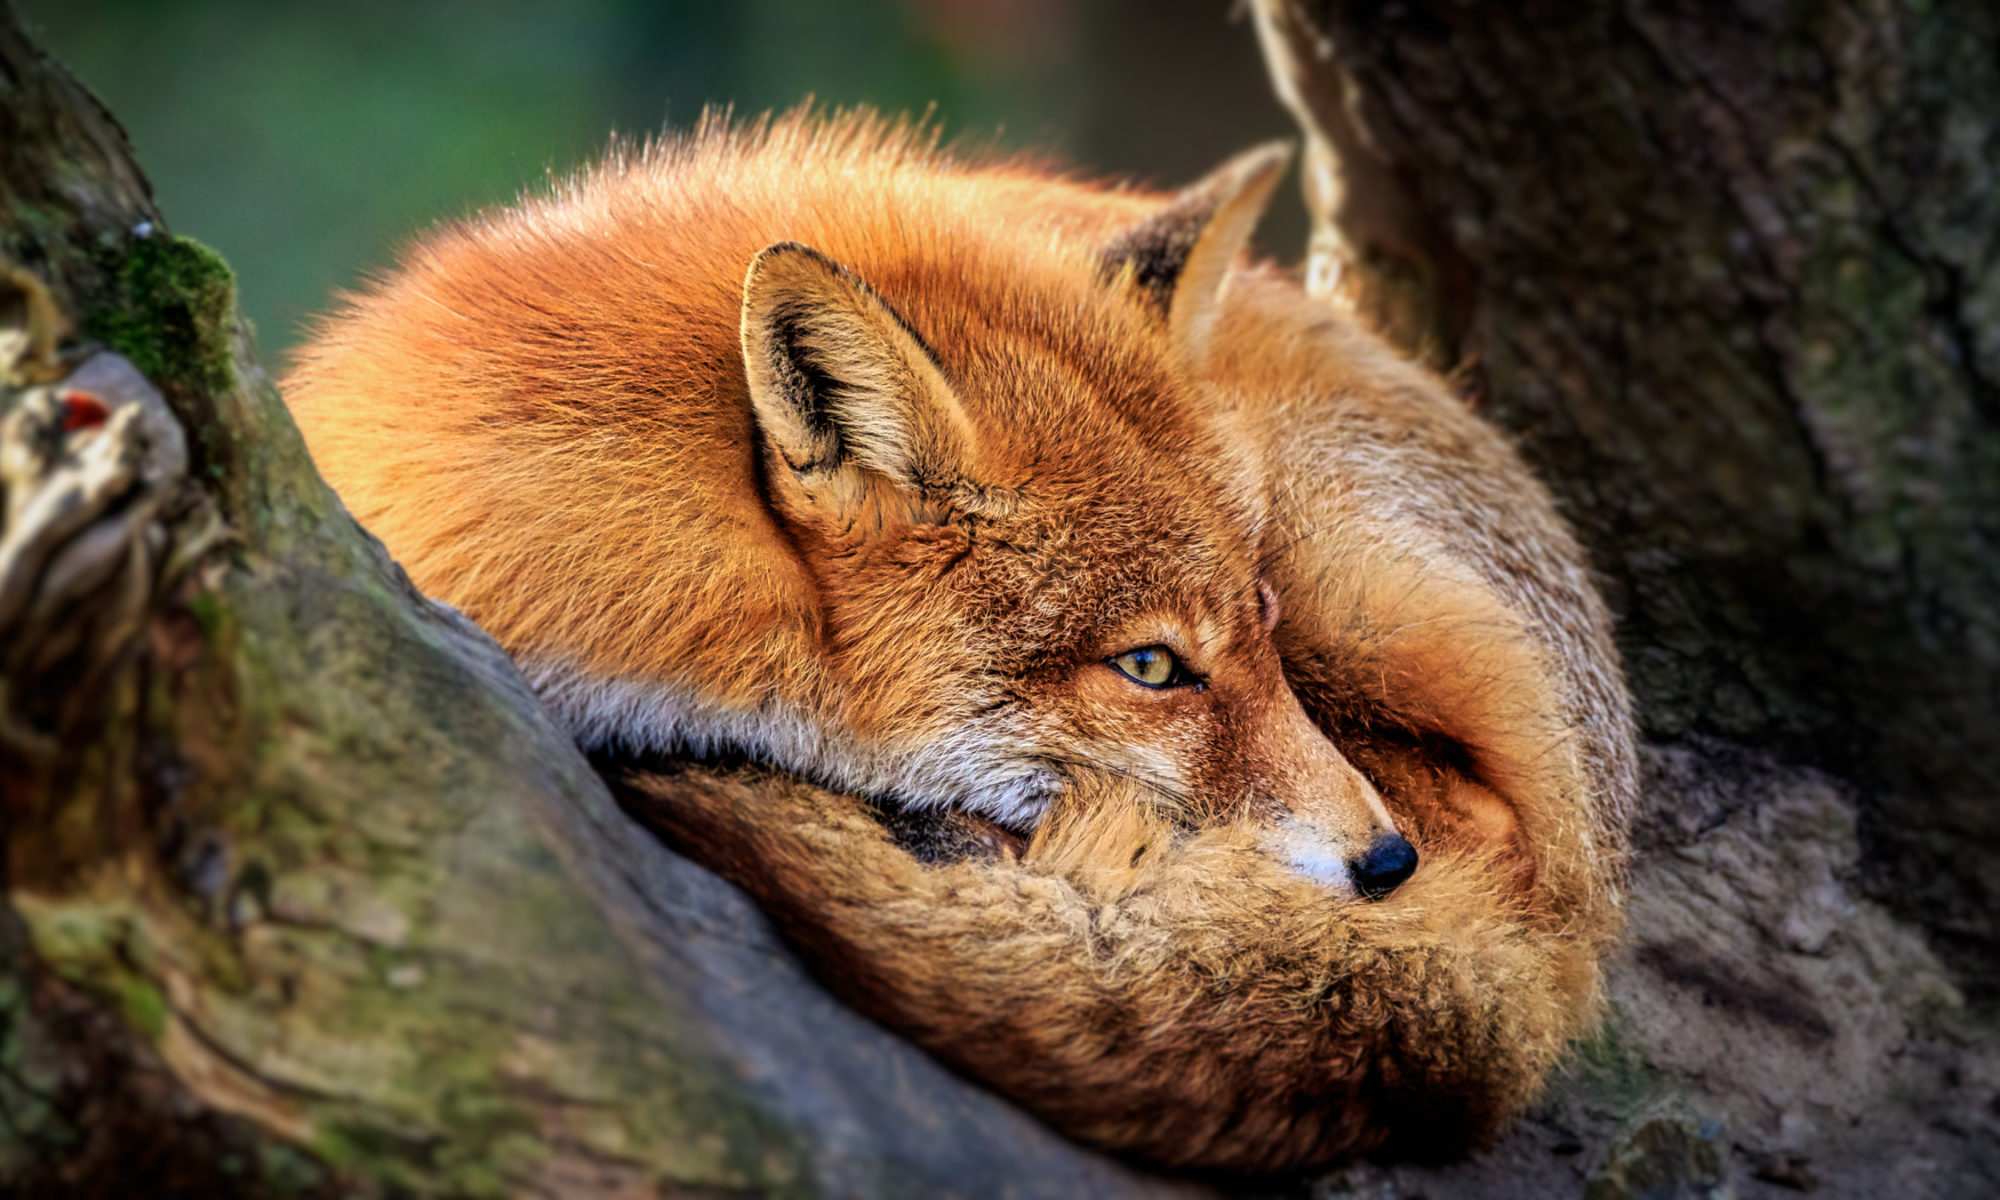 Reynard The Fox